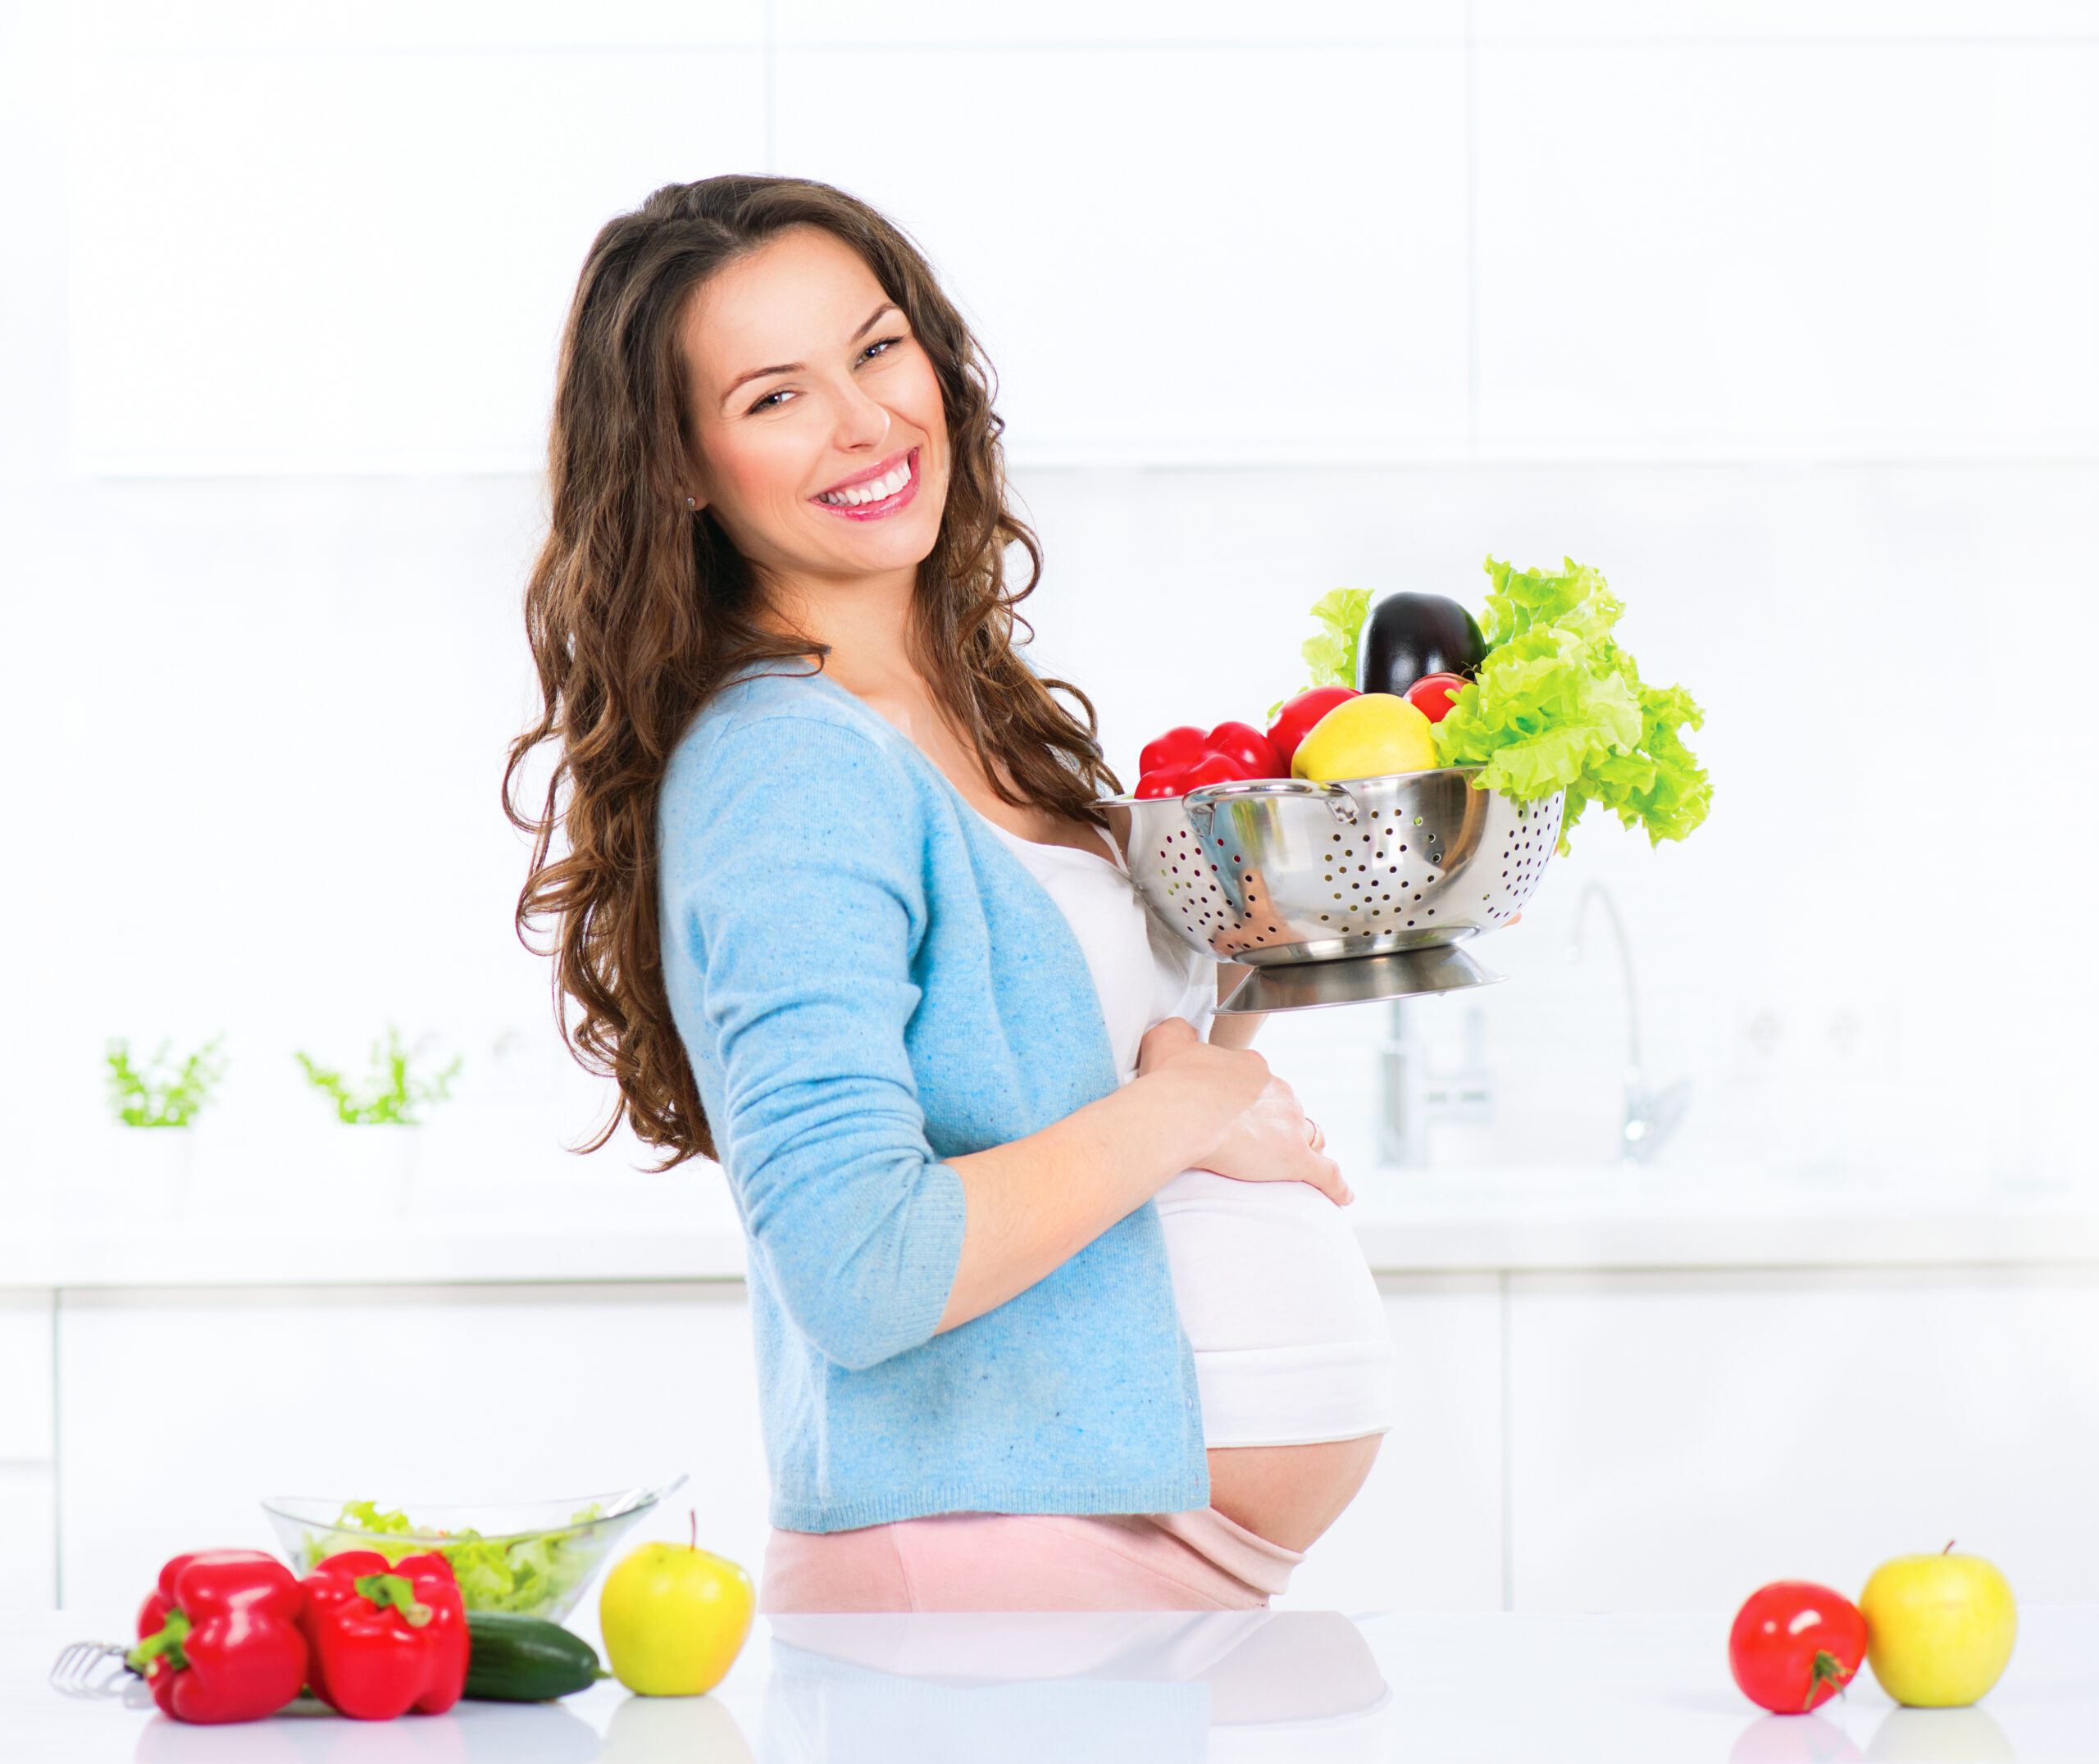 Važnost zdrave prehrane u trudnoći: hrvatska statistika, savjeti i planovi prehrane